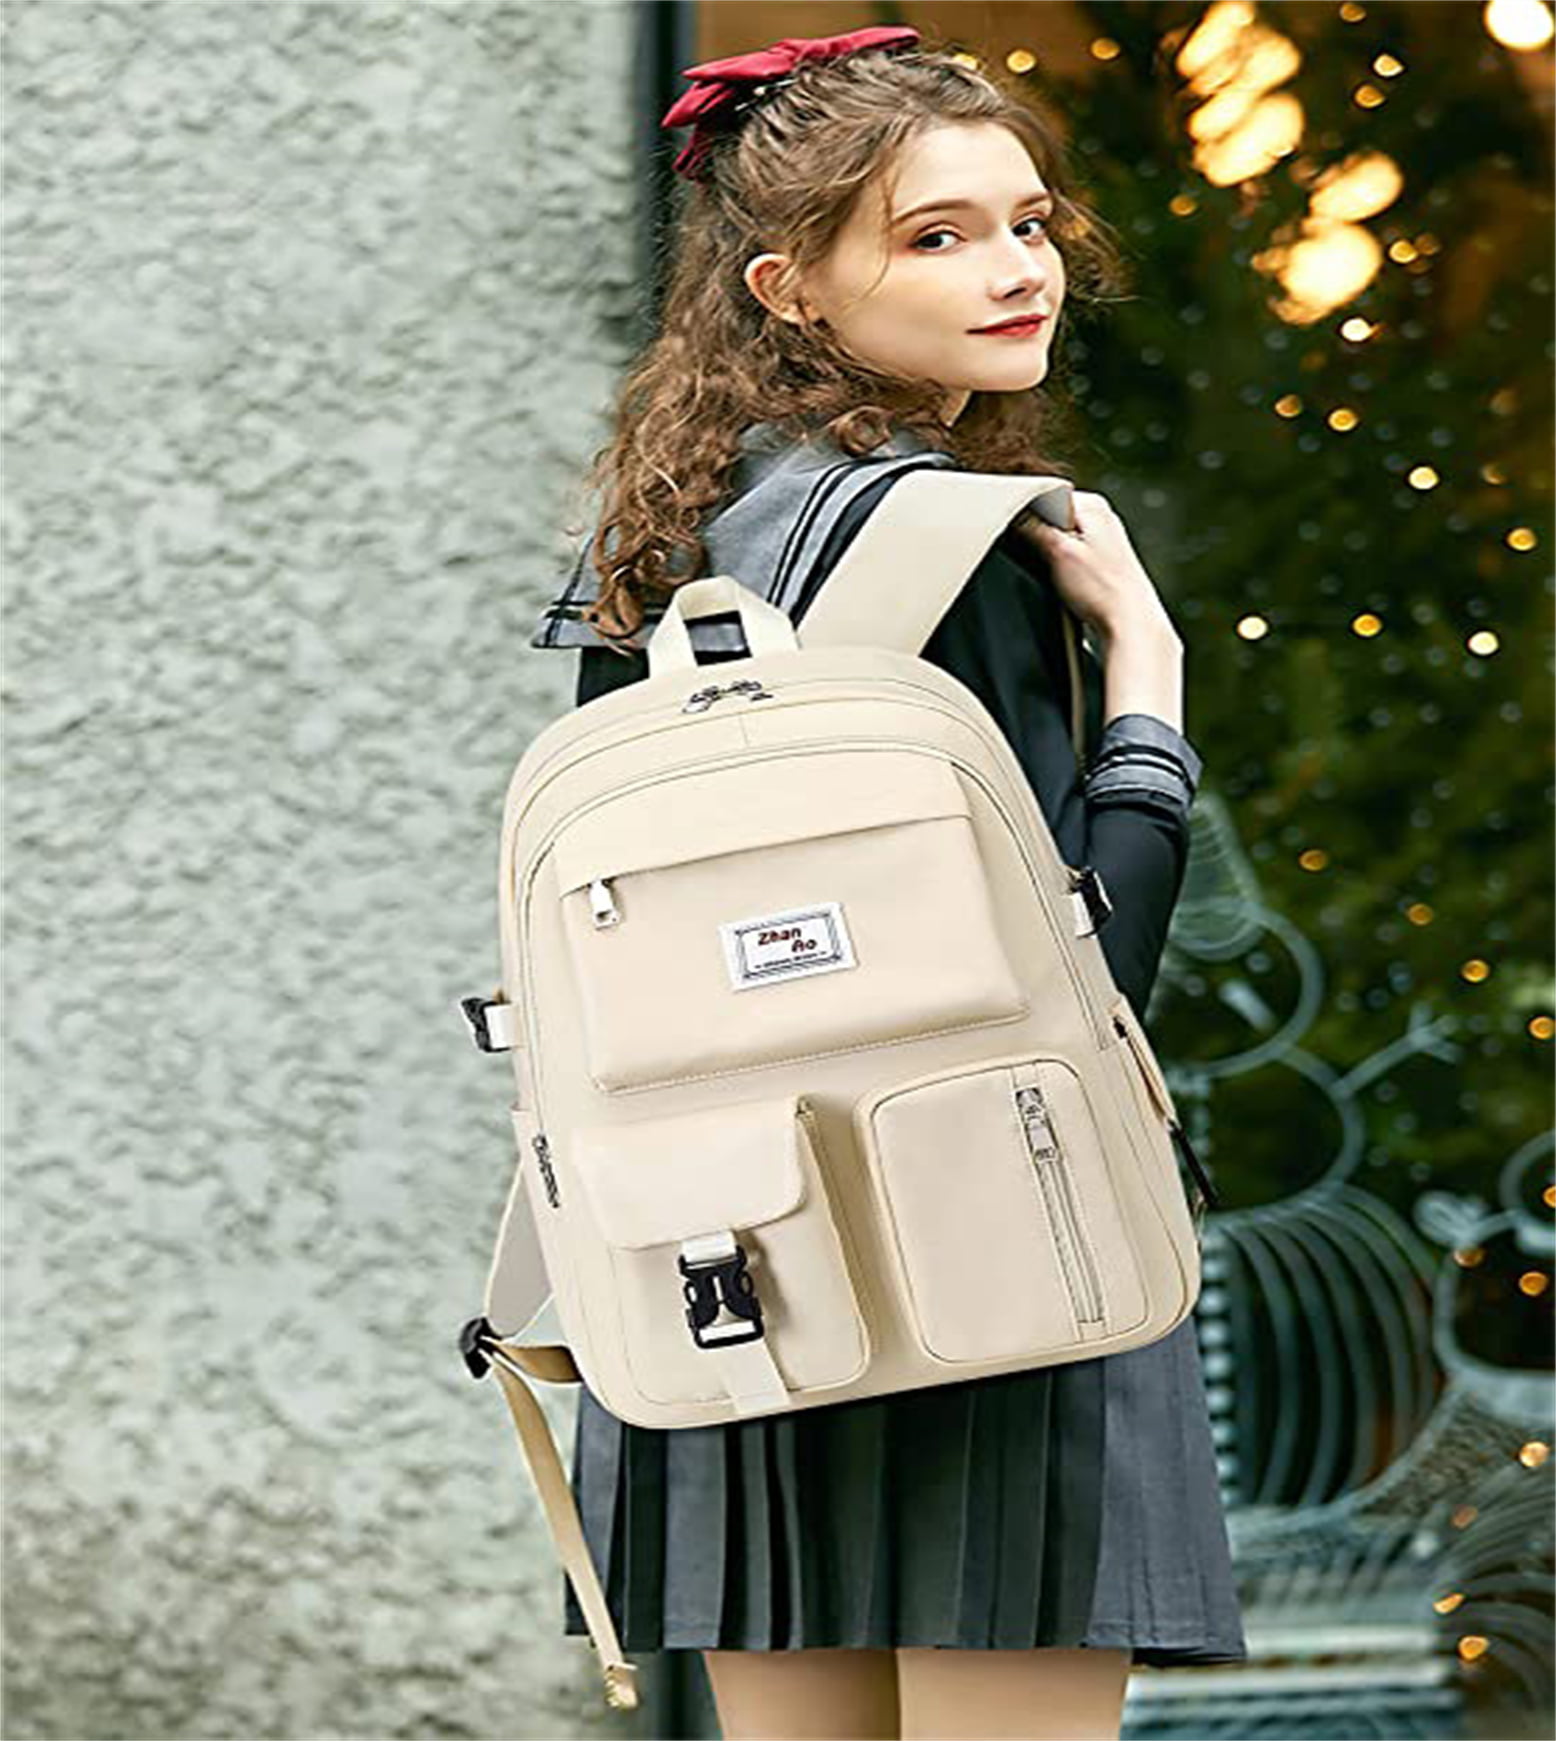 Buy Le Vintage 26 Ltr Trendy unisex School Bag I College Backpack